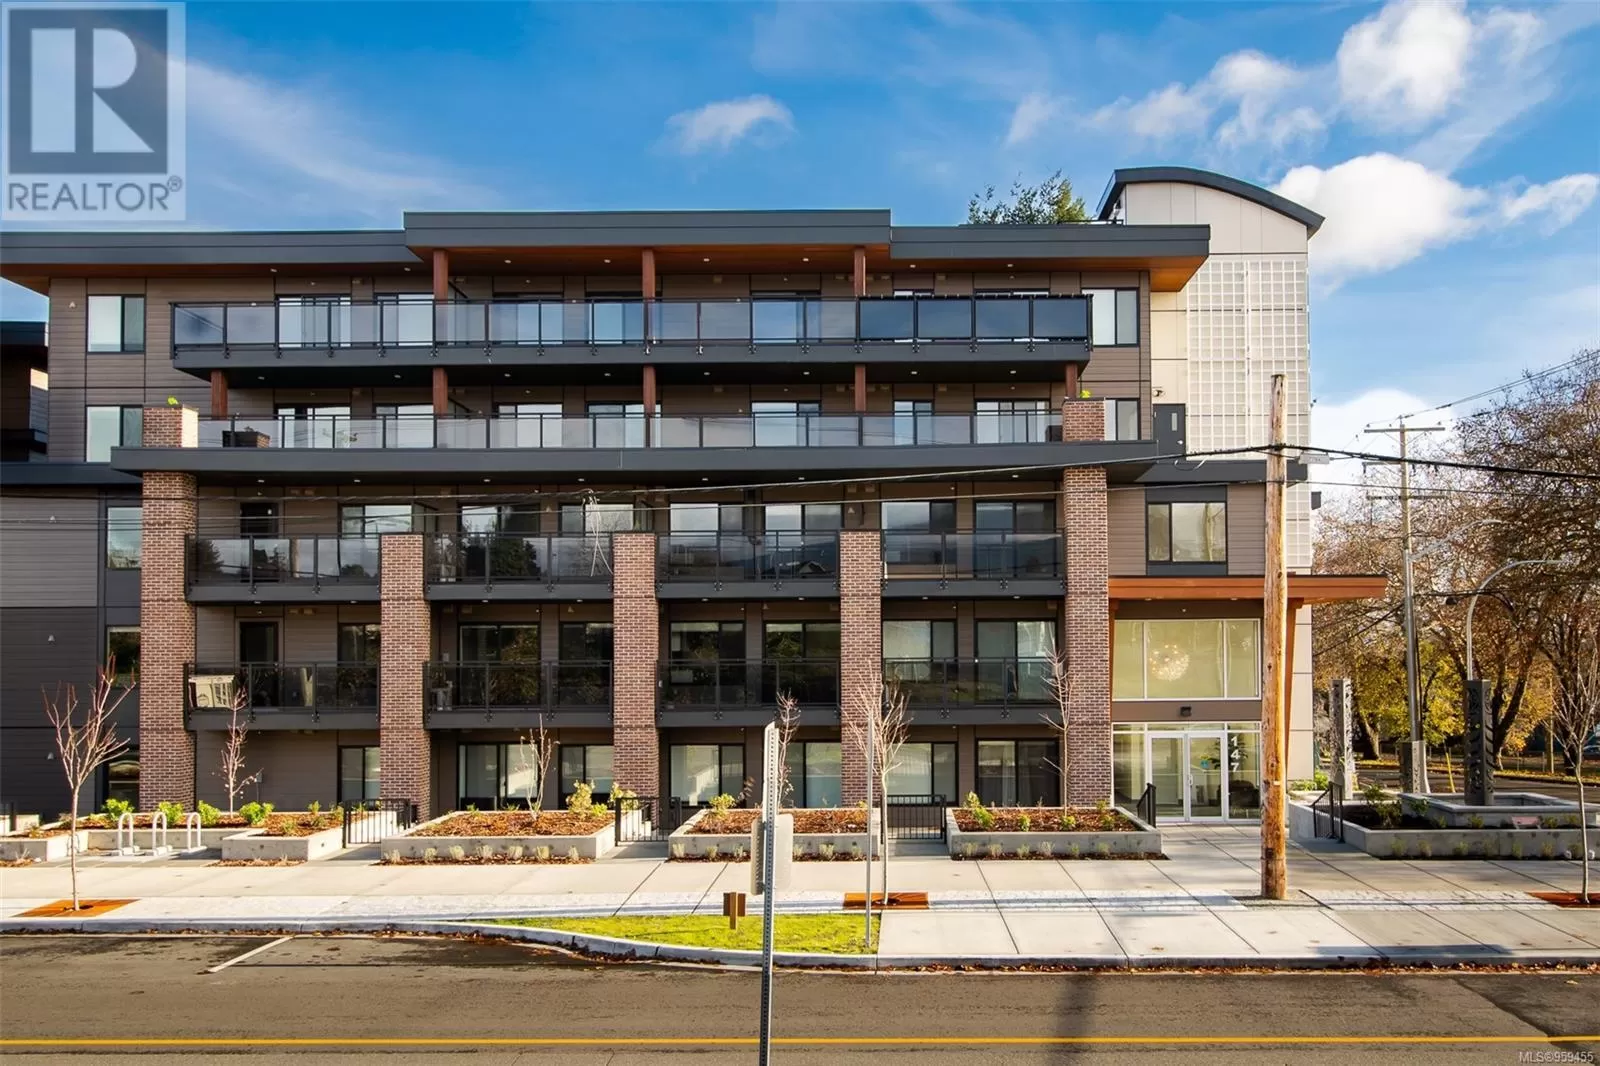 Apartment for rent: 503 135 Haliburton St, Nanaimo, British Columbia V9R 4V9